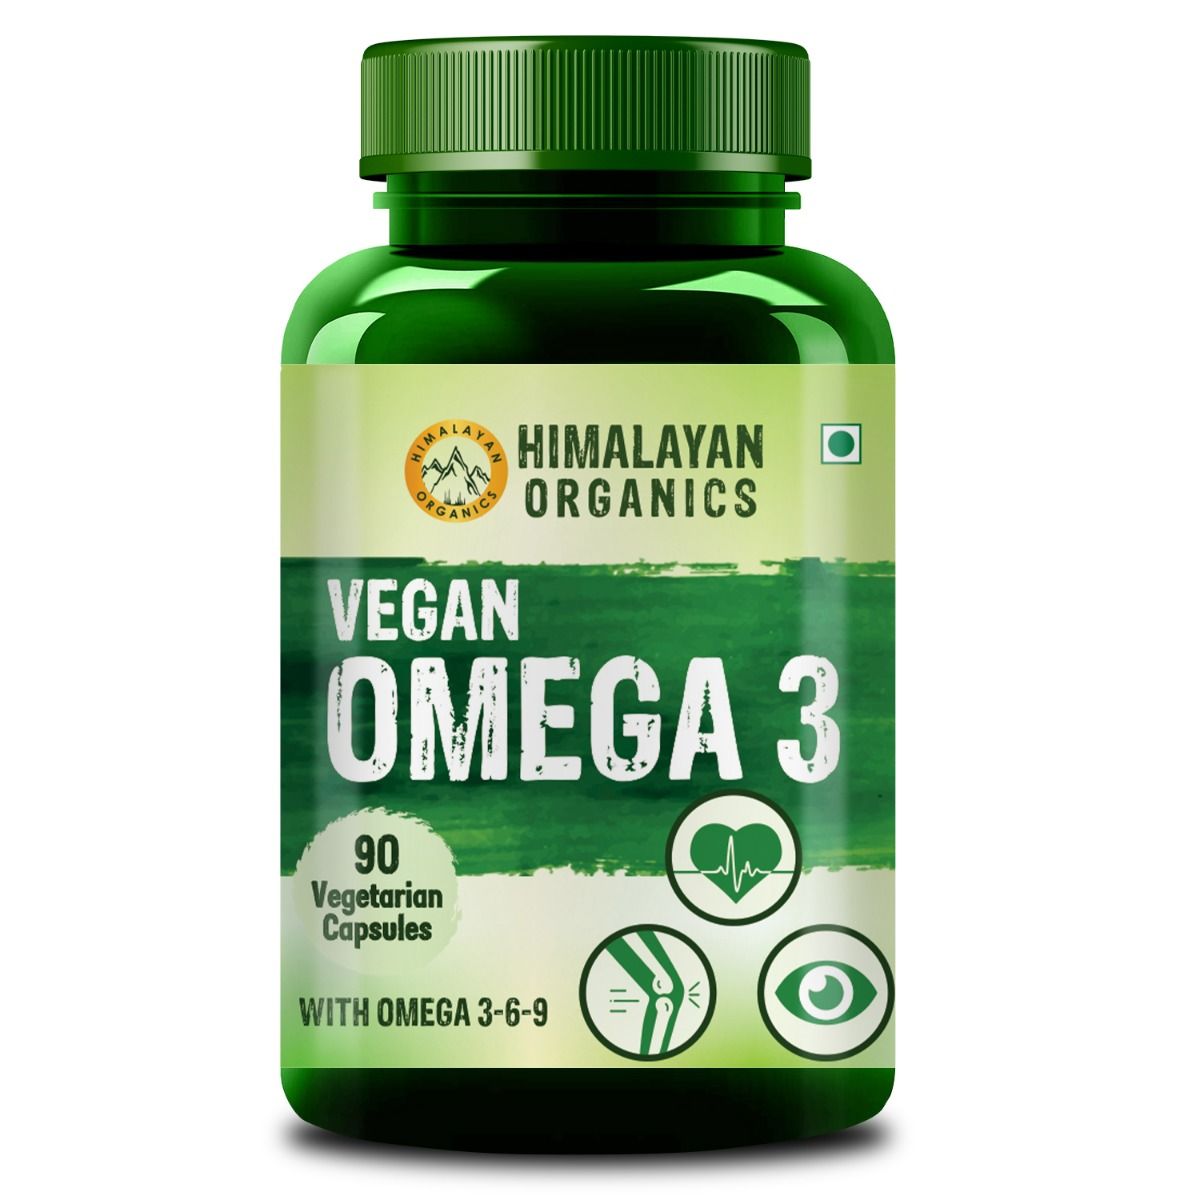 Himalayan Organics Vegan Omega 3, 90 Capsules, Pack of 1 